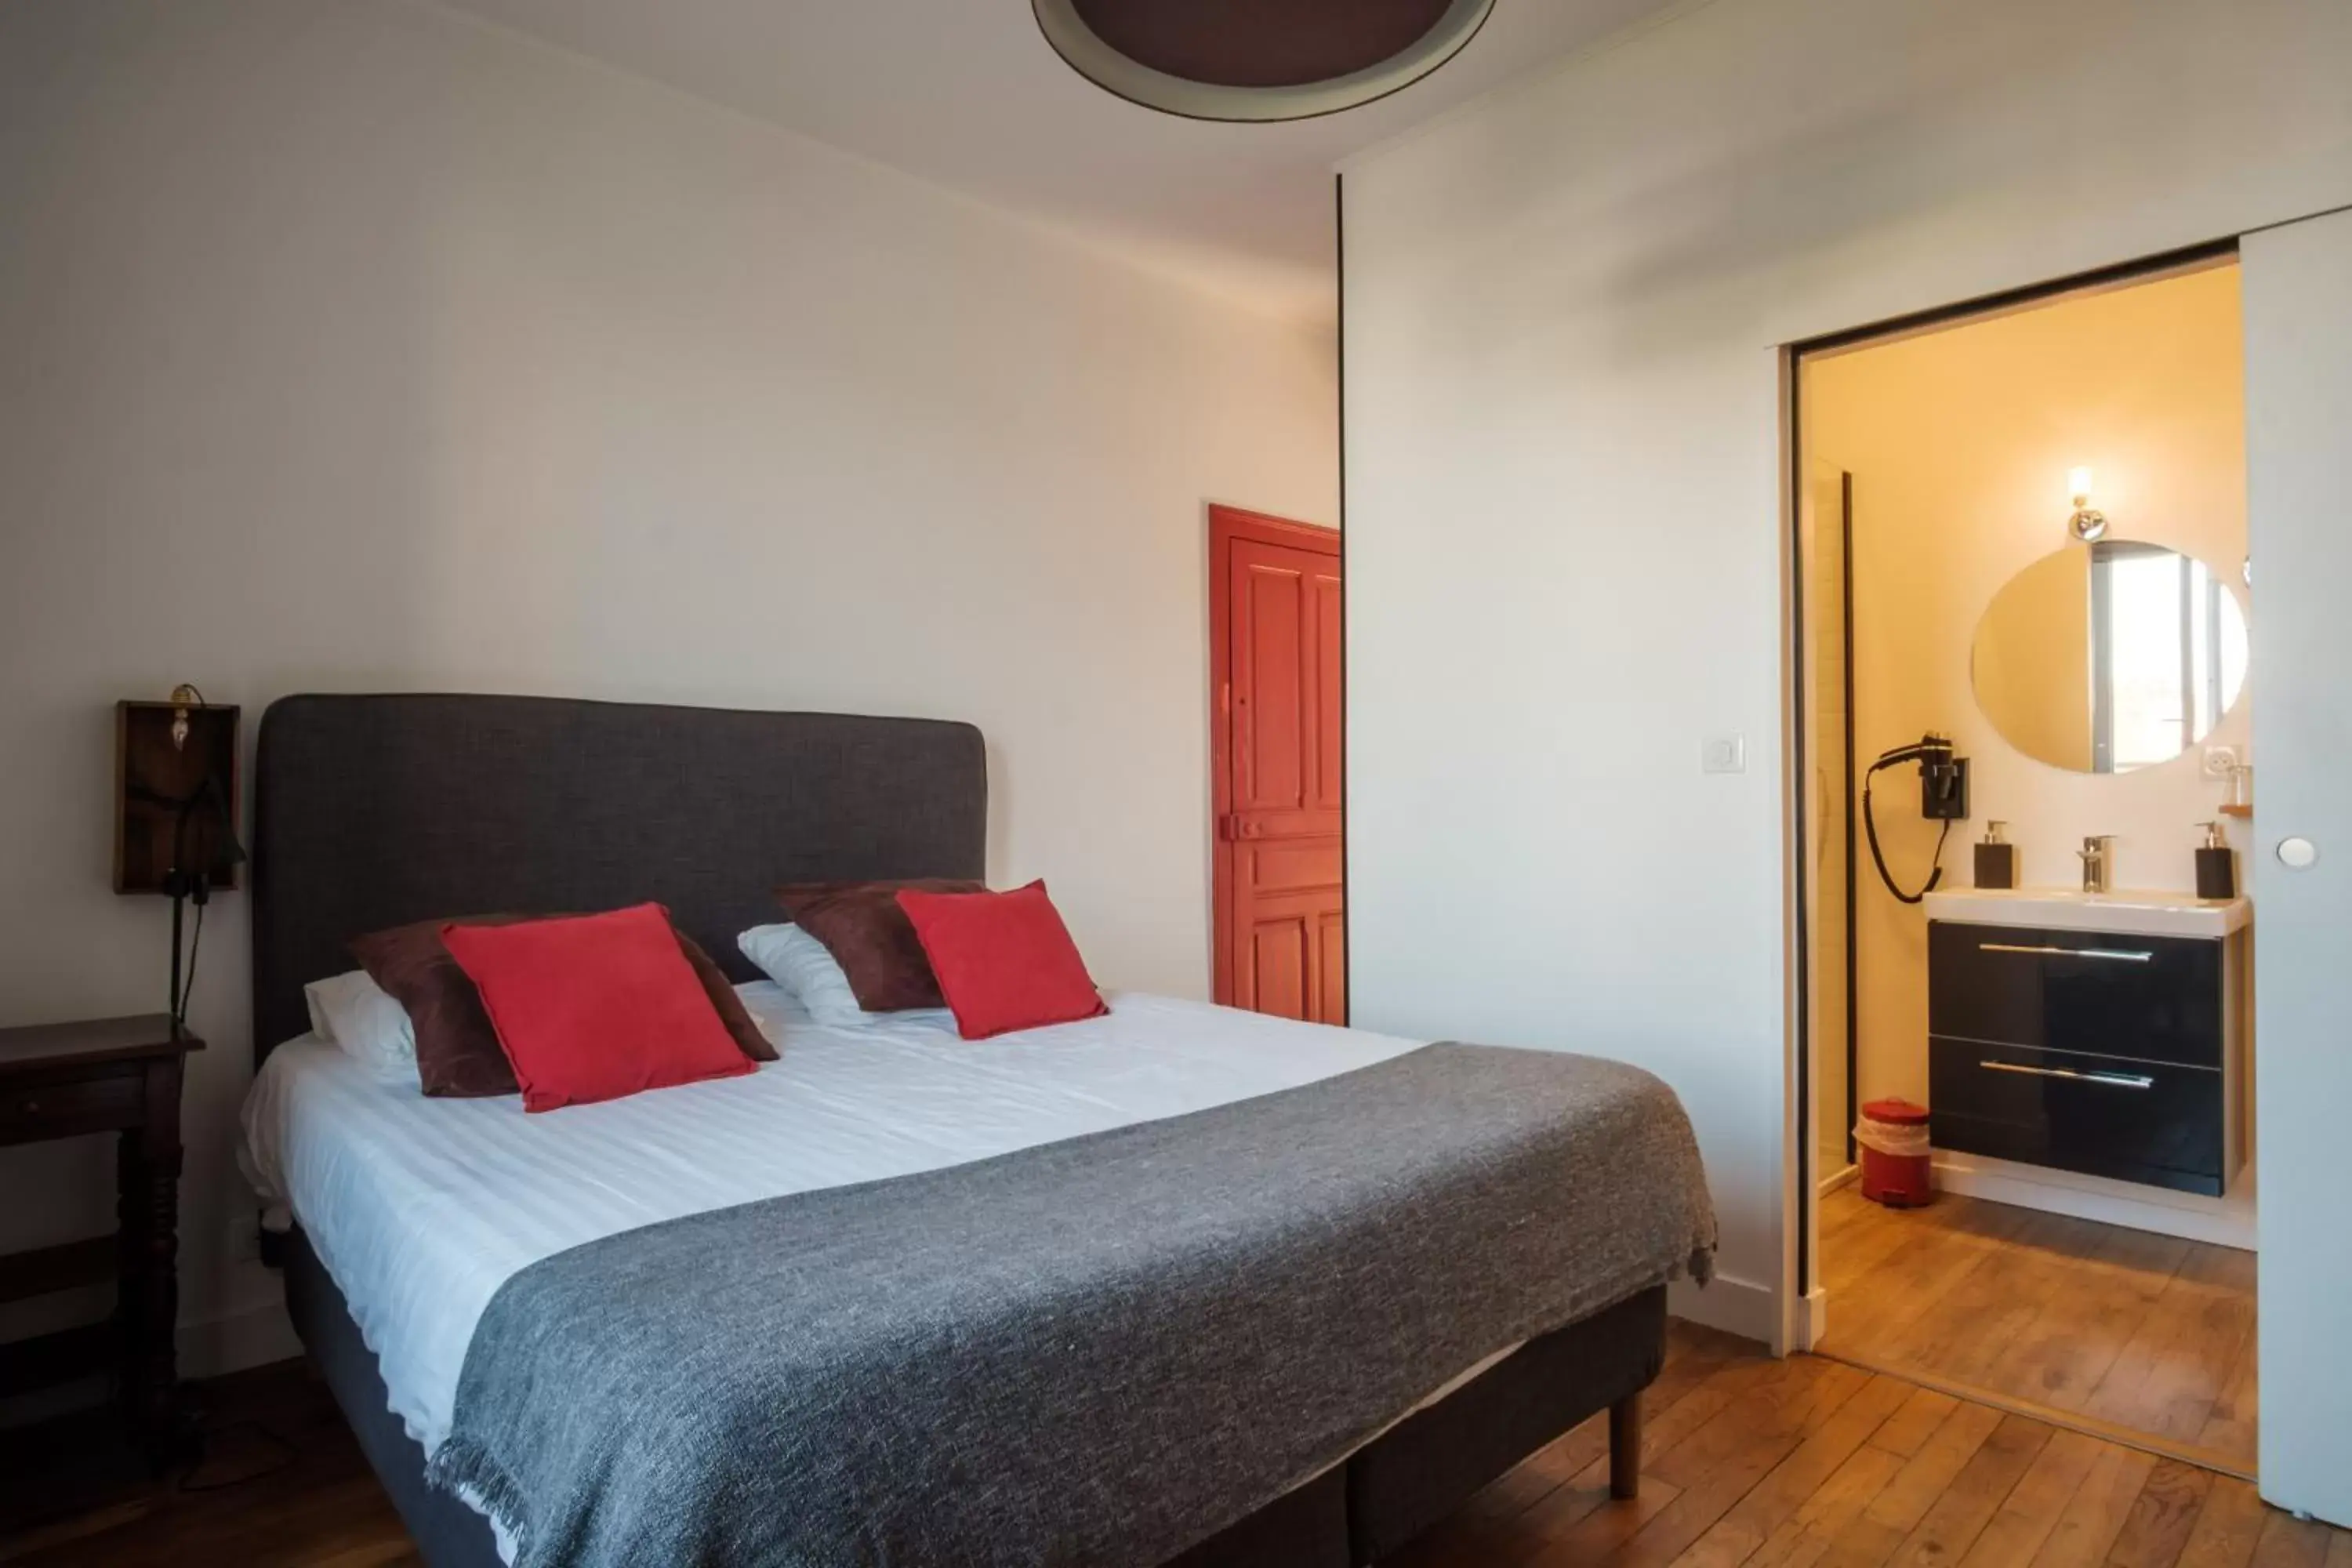 Bed in Dupain & Dubeurre Appart'Hôtel - Parking